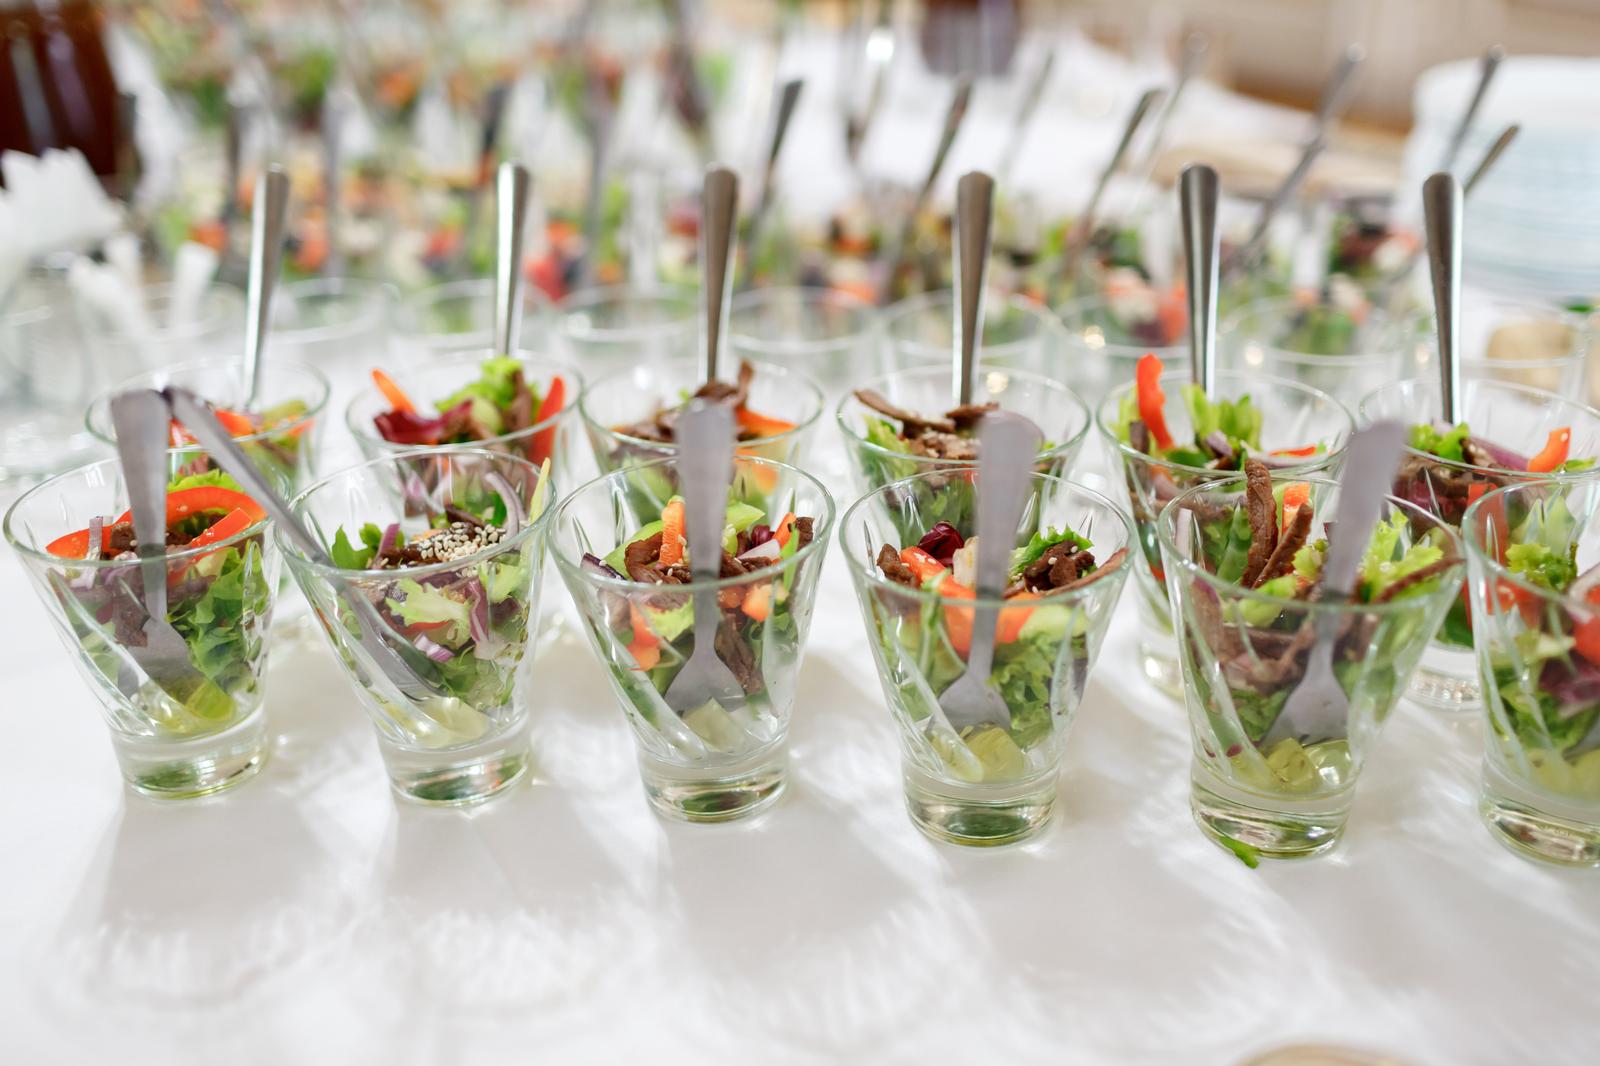 Event catering activities in Estonia